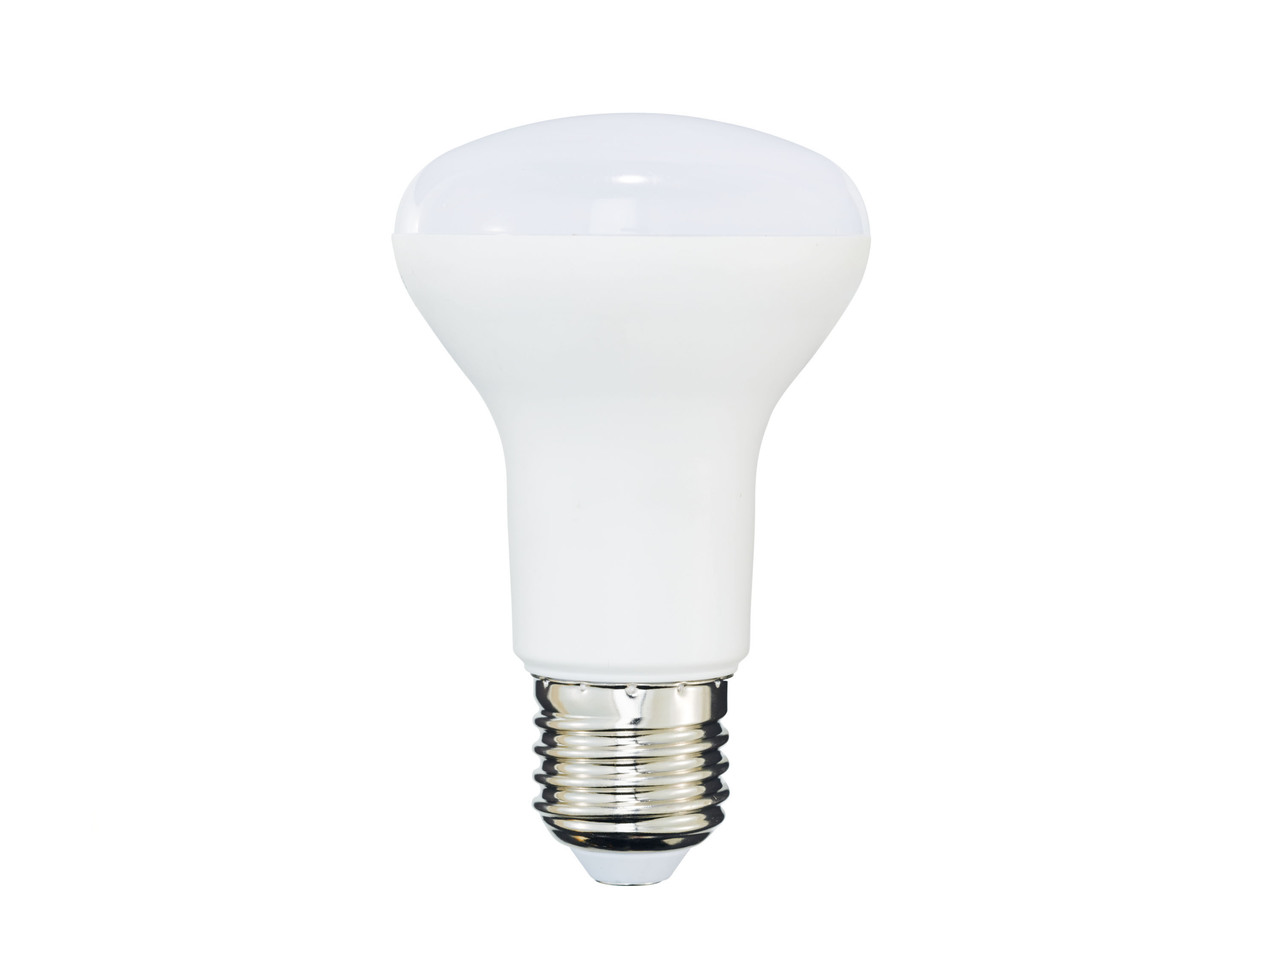 LED Bulb or Spotlight